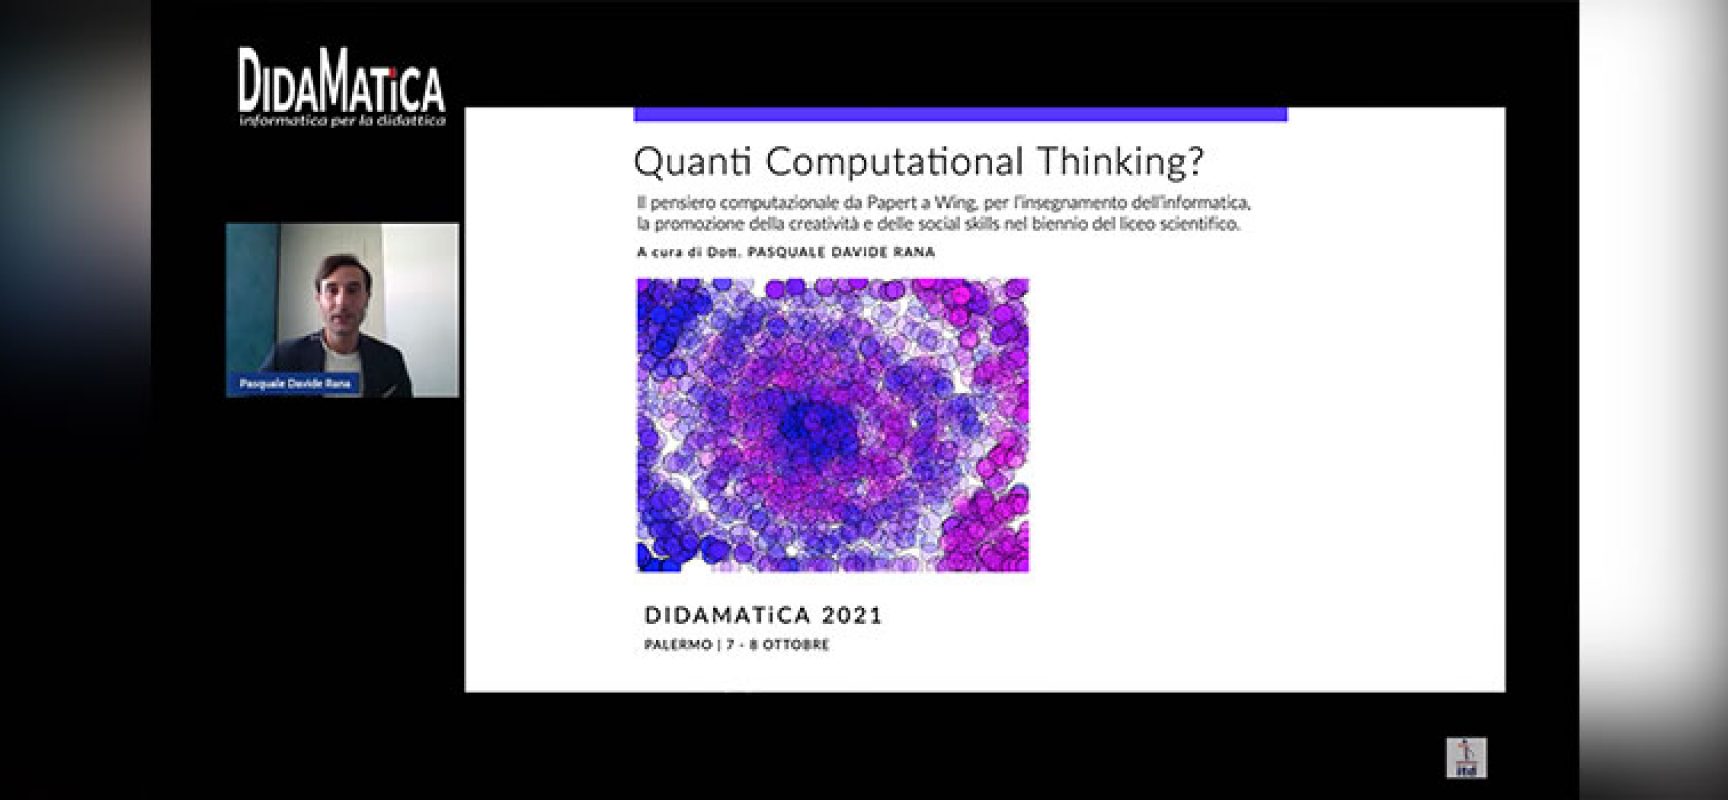 Il biscegliese Rana pubblica nuovo lavoro sul pensiero computazionale